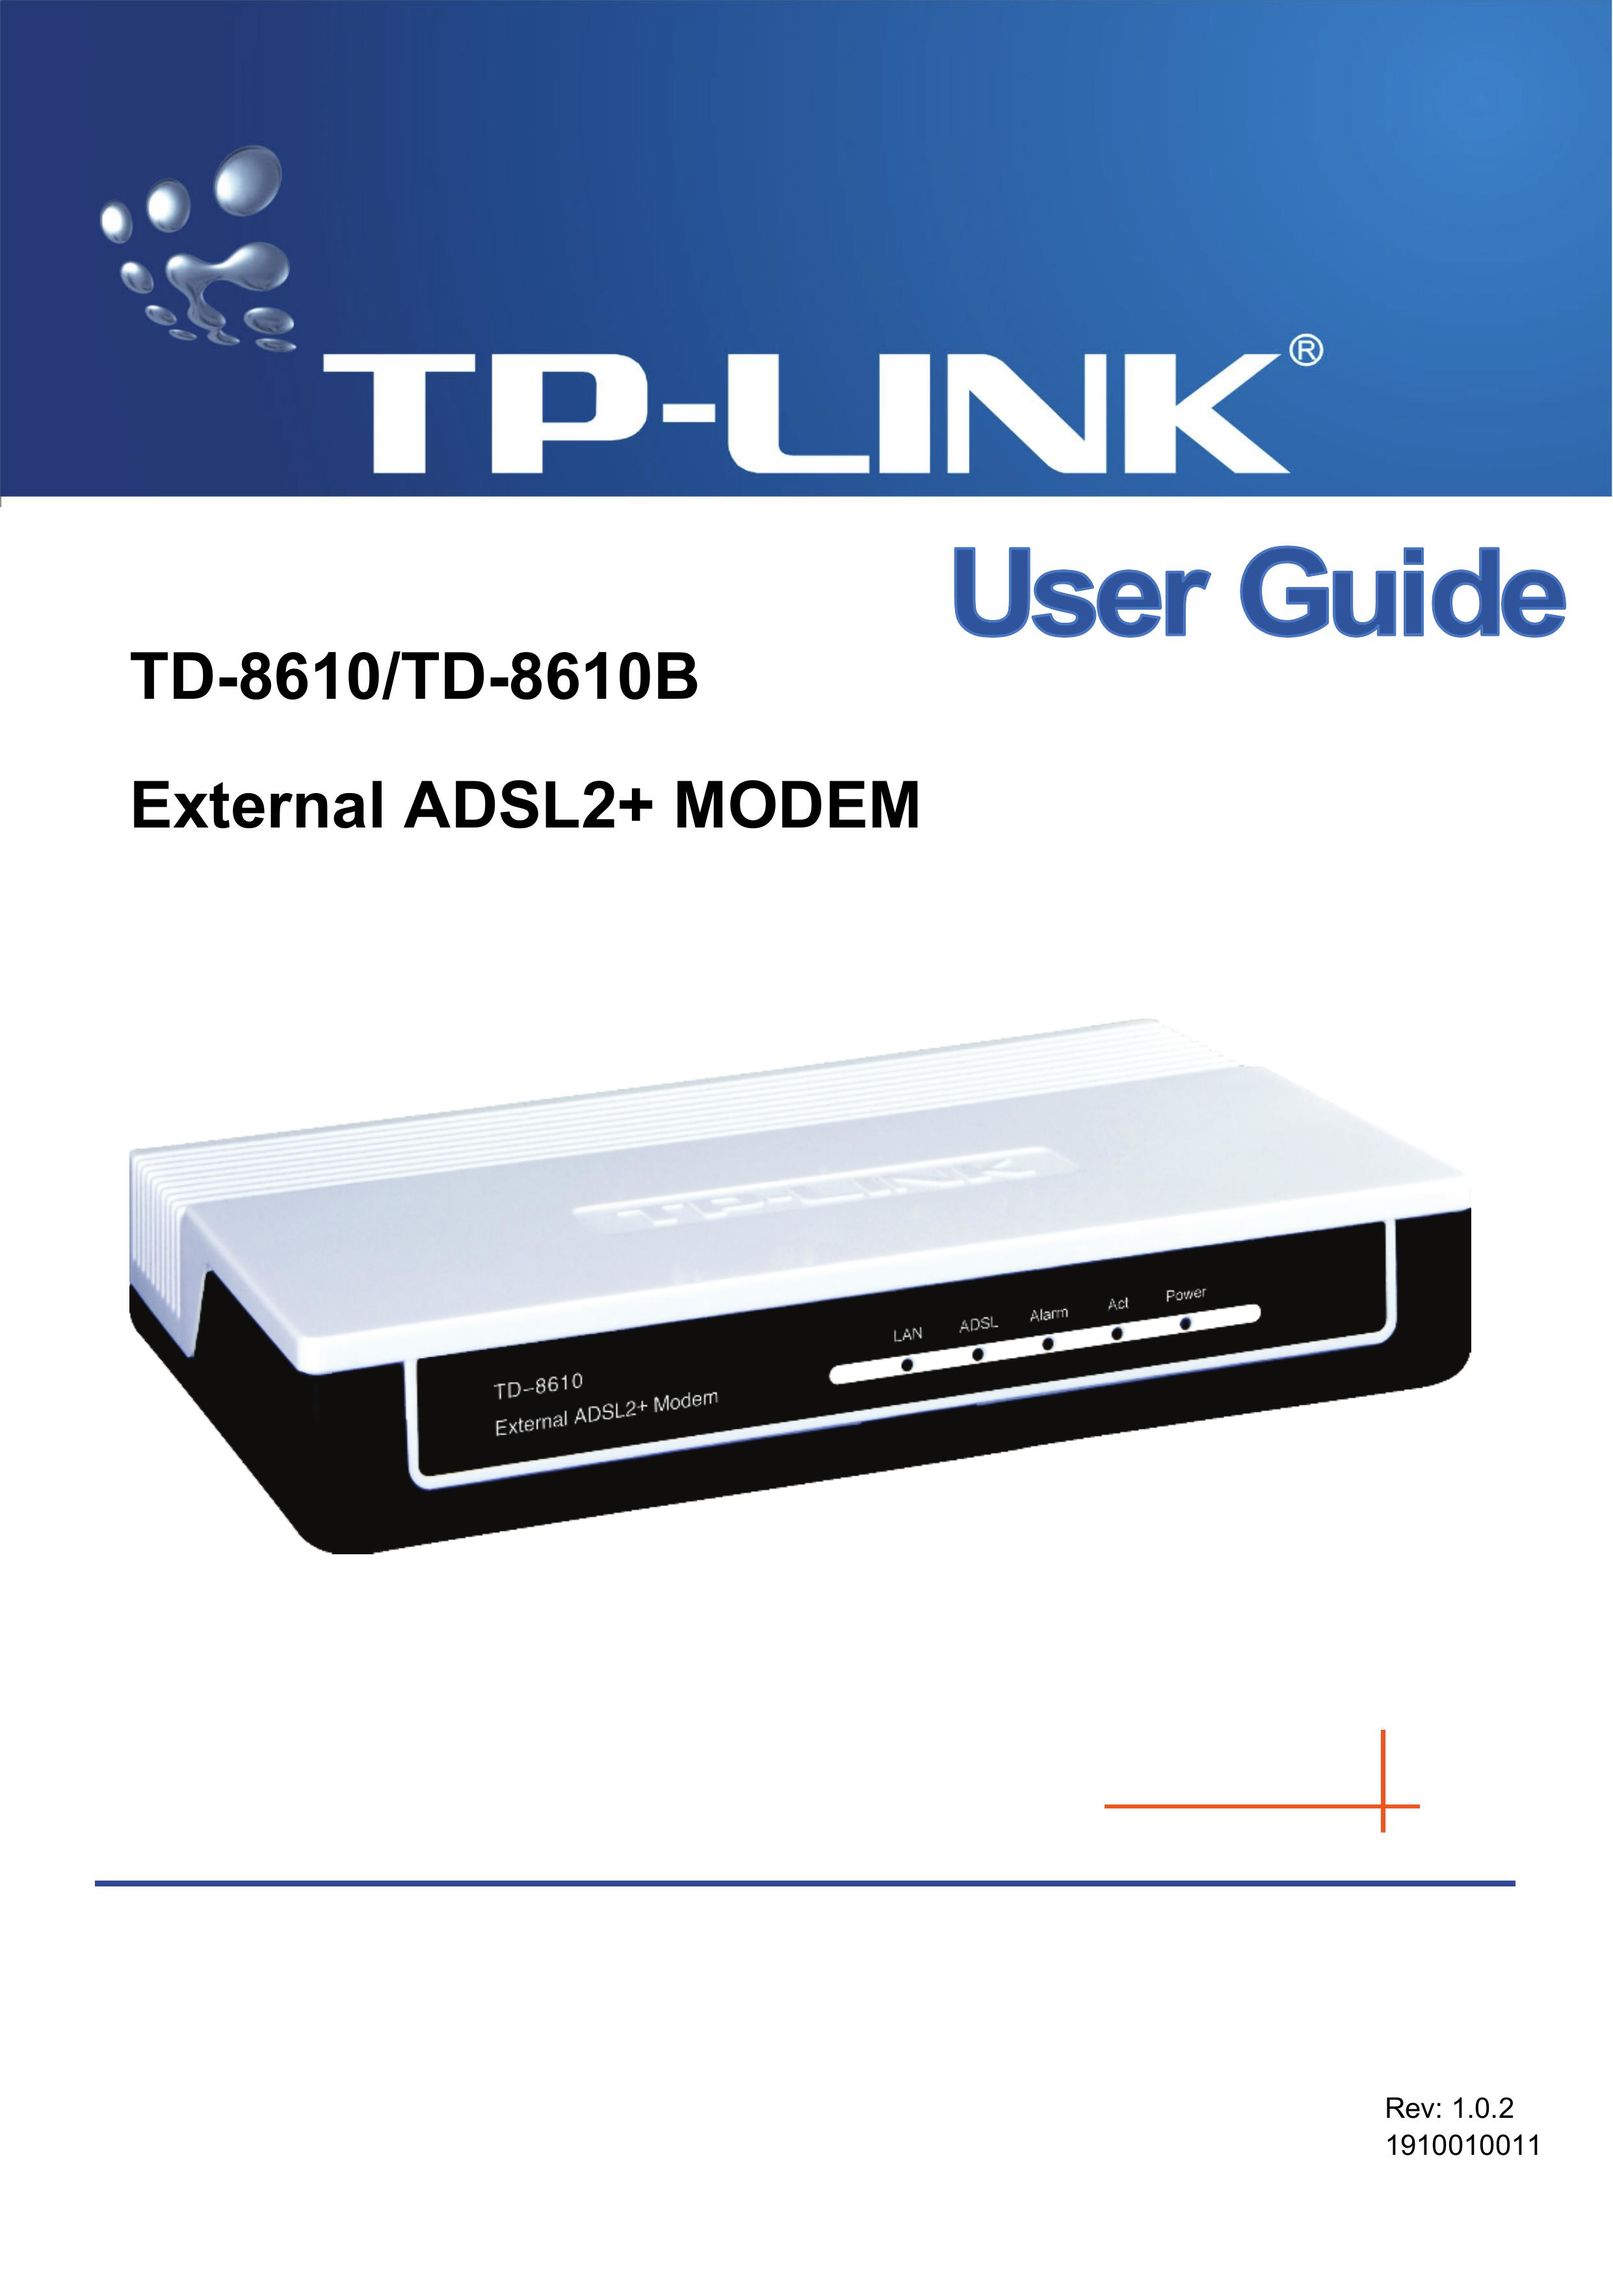 TP-Link TD-8610 Modem User Manual